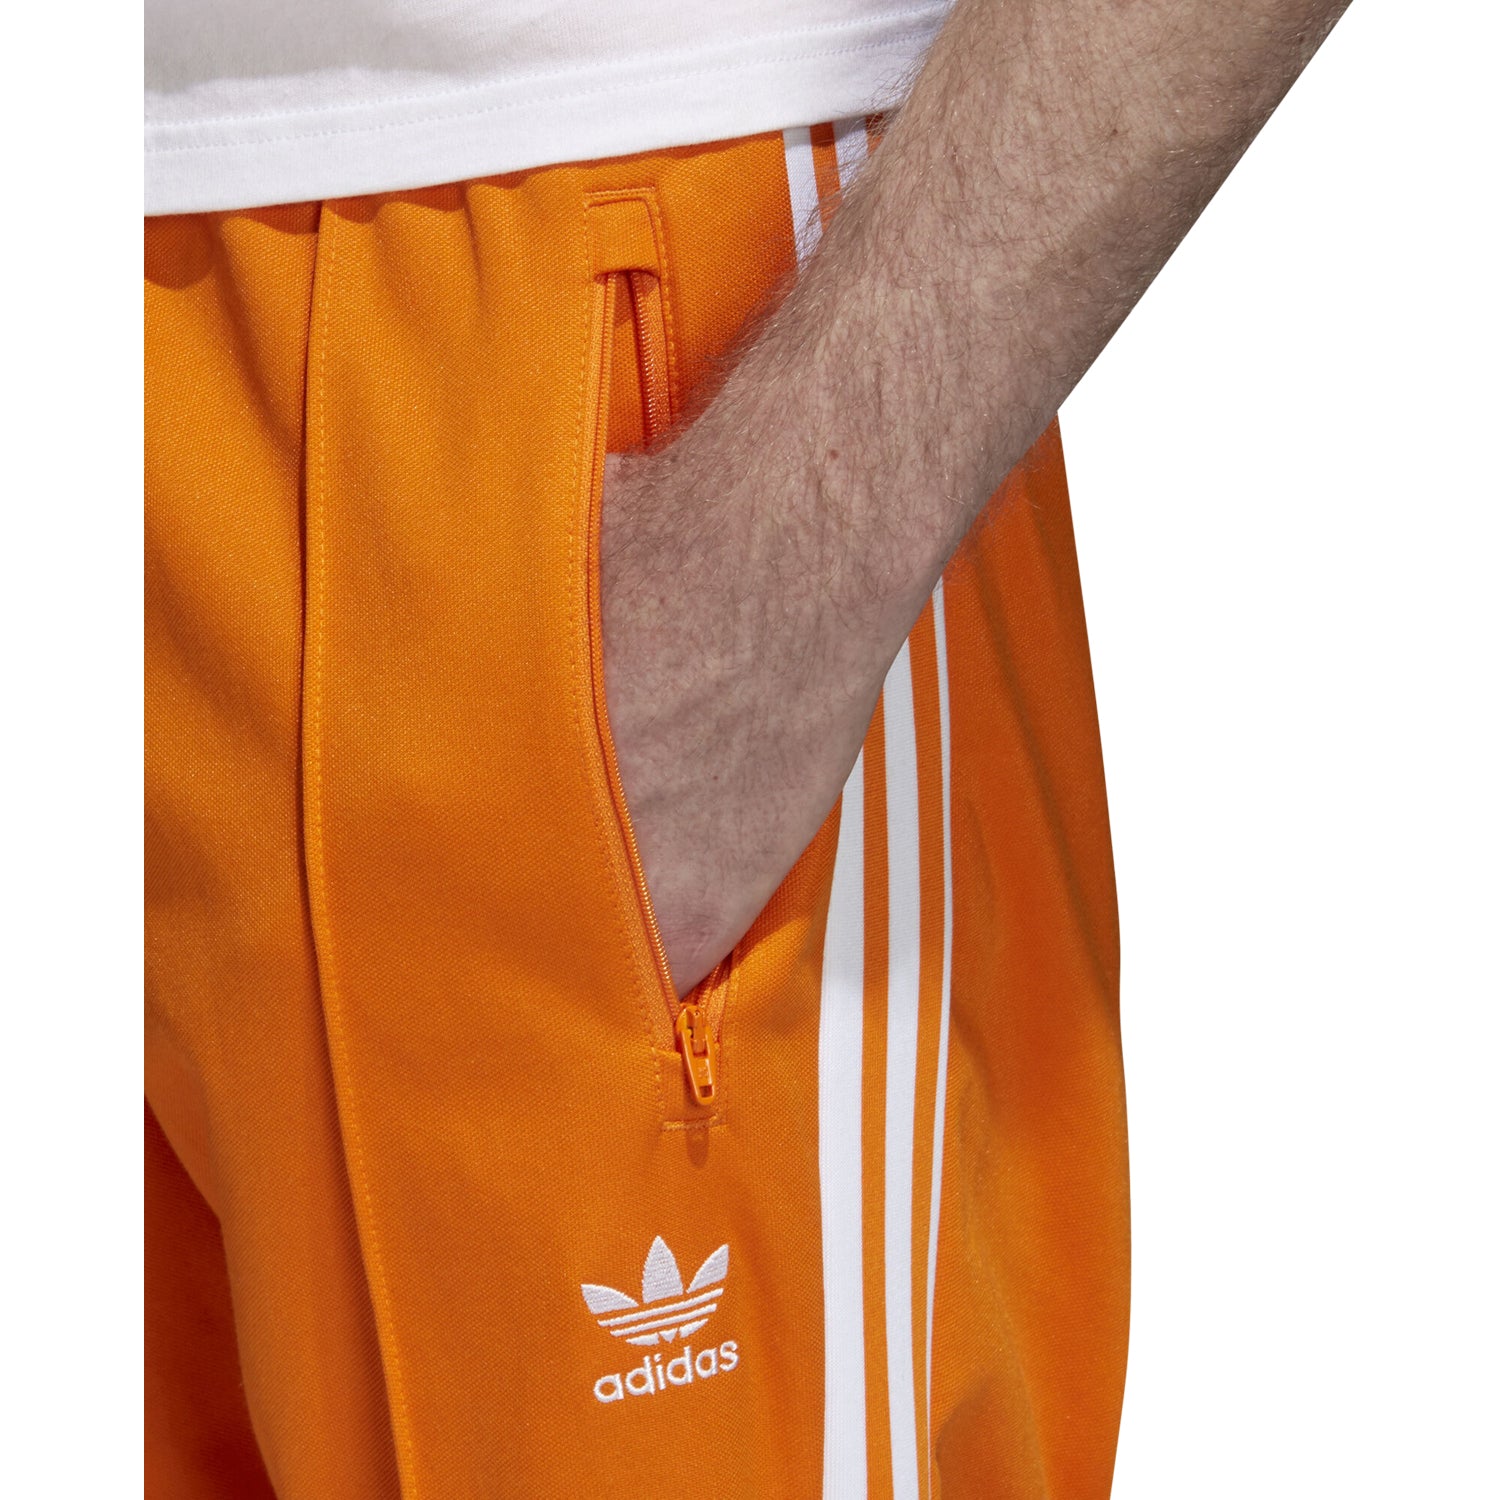 adidas beckenbauer orange